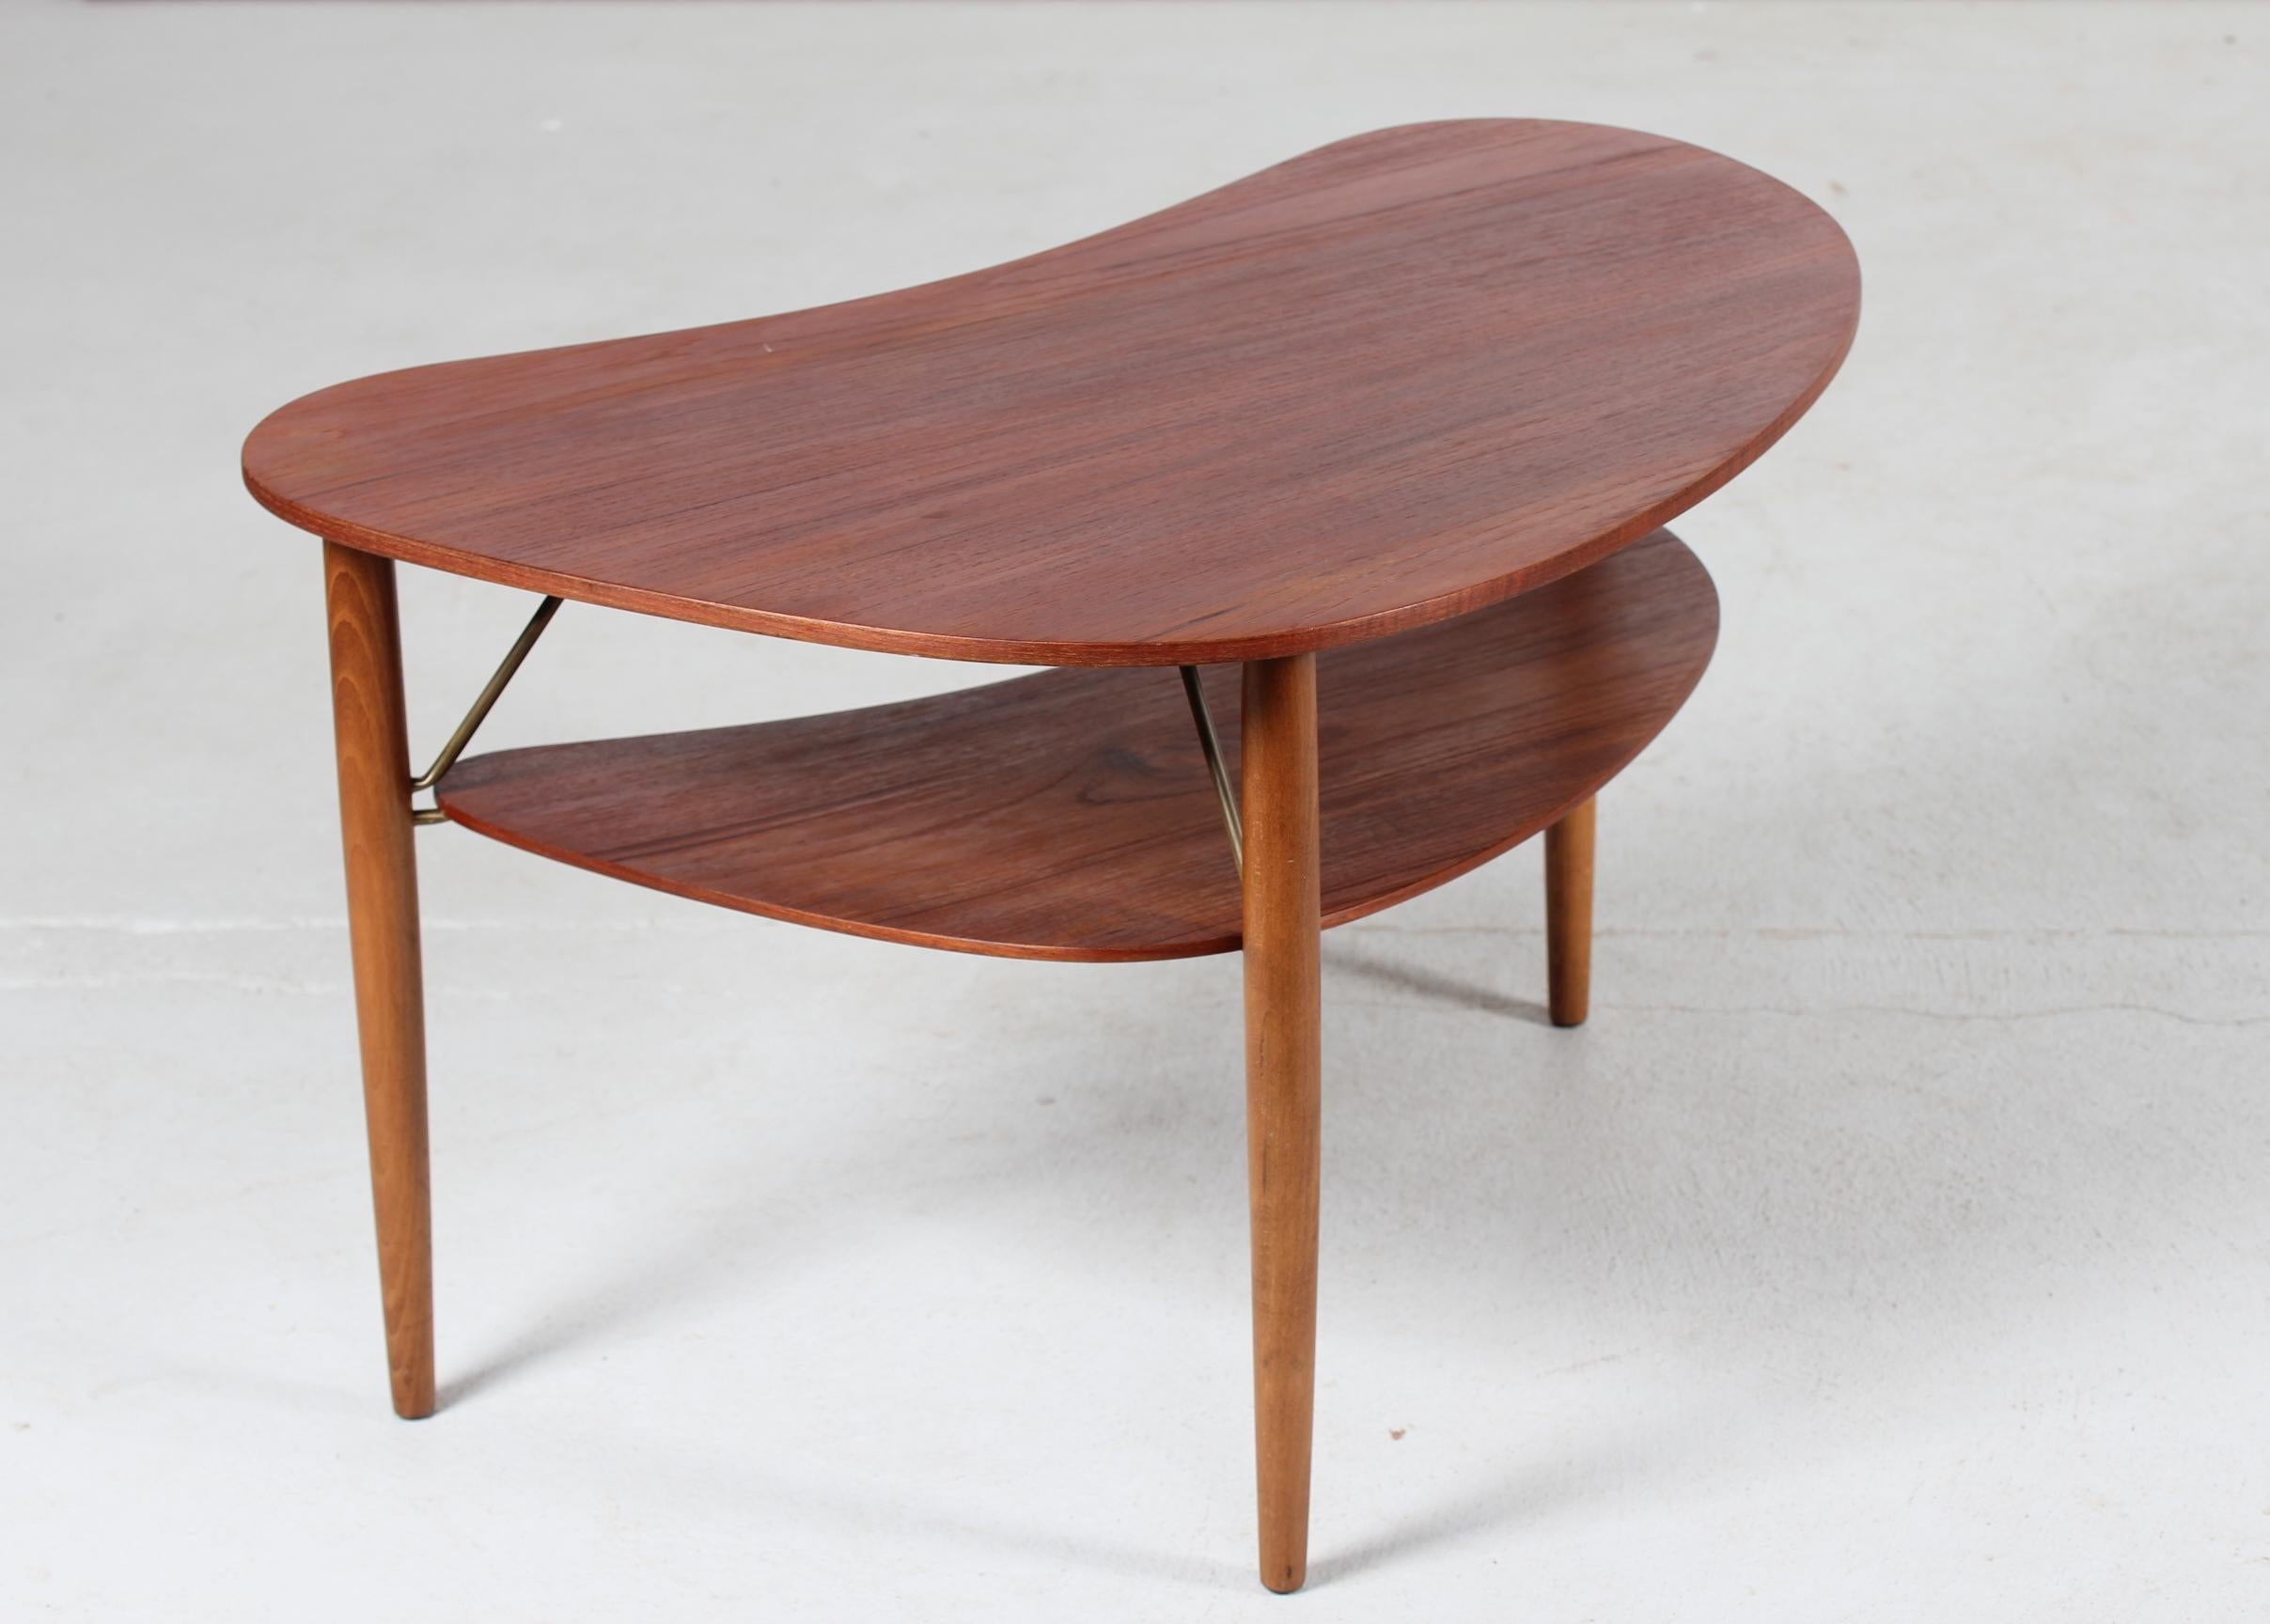 Dänischer moderner organisch geformter Couchtisch mit Regal aus den 1950er Jahren, ein
Vintage-Tisch mit einer schönen runden Form. 
Die Tischplatte ist aus Teakholzfurnier und die runden Beine sind aus massiver Buche gefertigt. Die Beschläge und